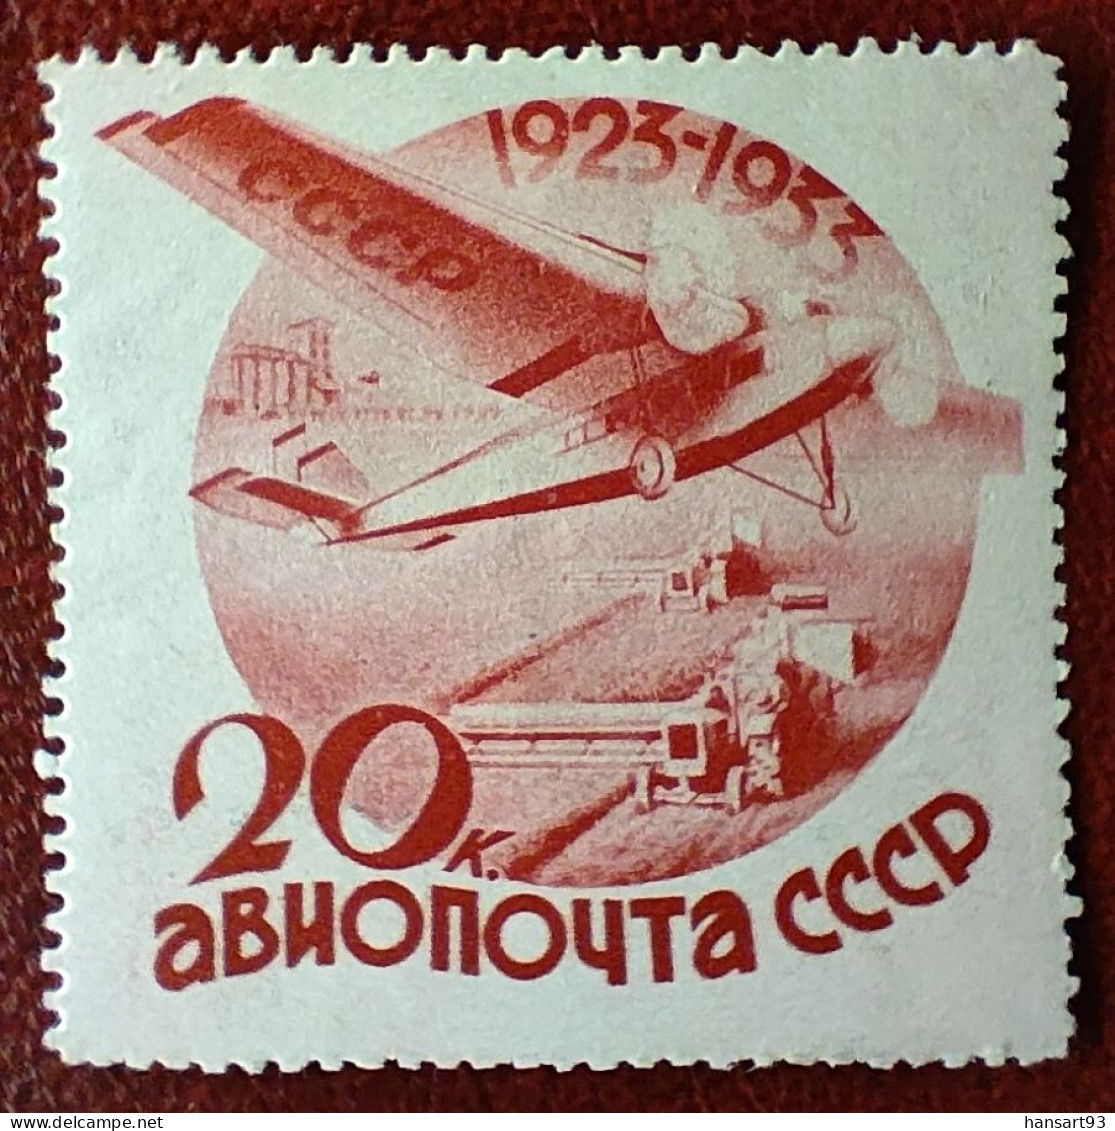 URSS Rare Poste Aérienne N° 43 N* TTB Avec Un Petit Pli Horizontal ! Cote 2020 : 50,00 Euros ! A Voir Absolument !! - Unused Stamps